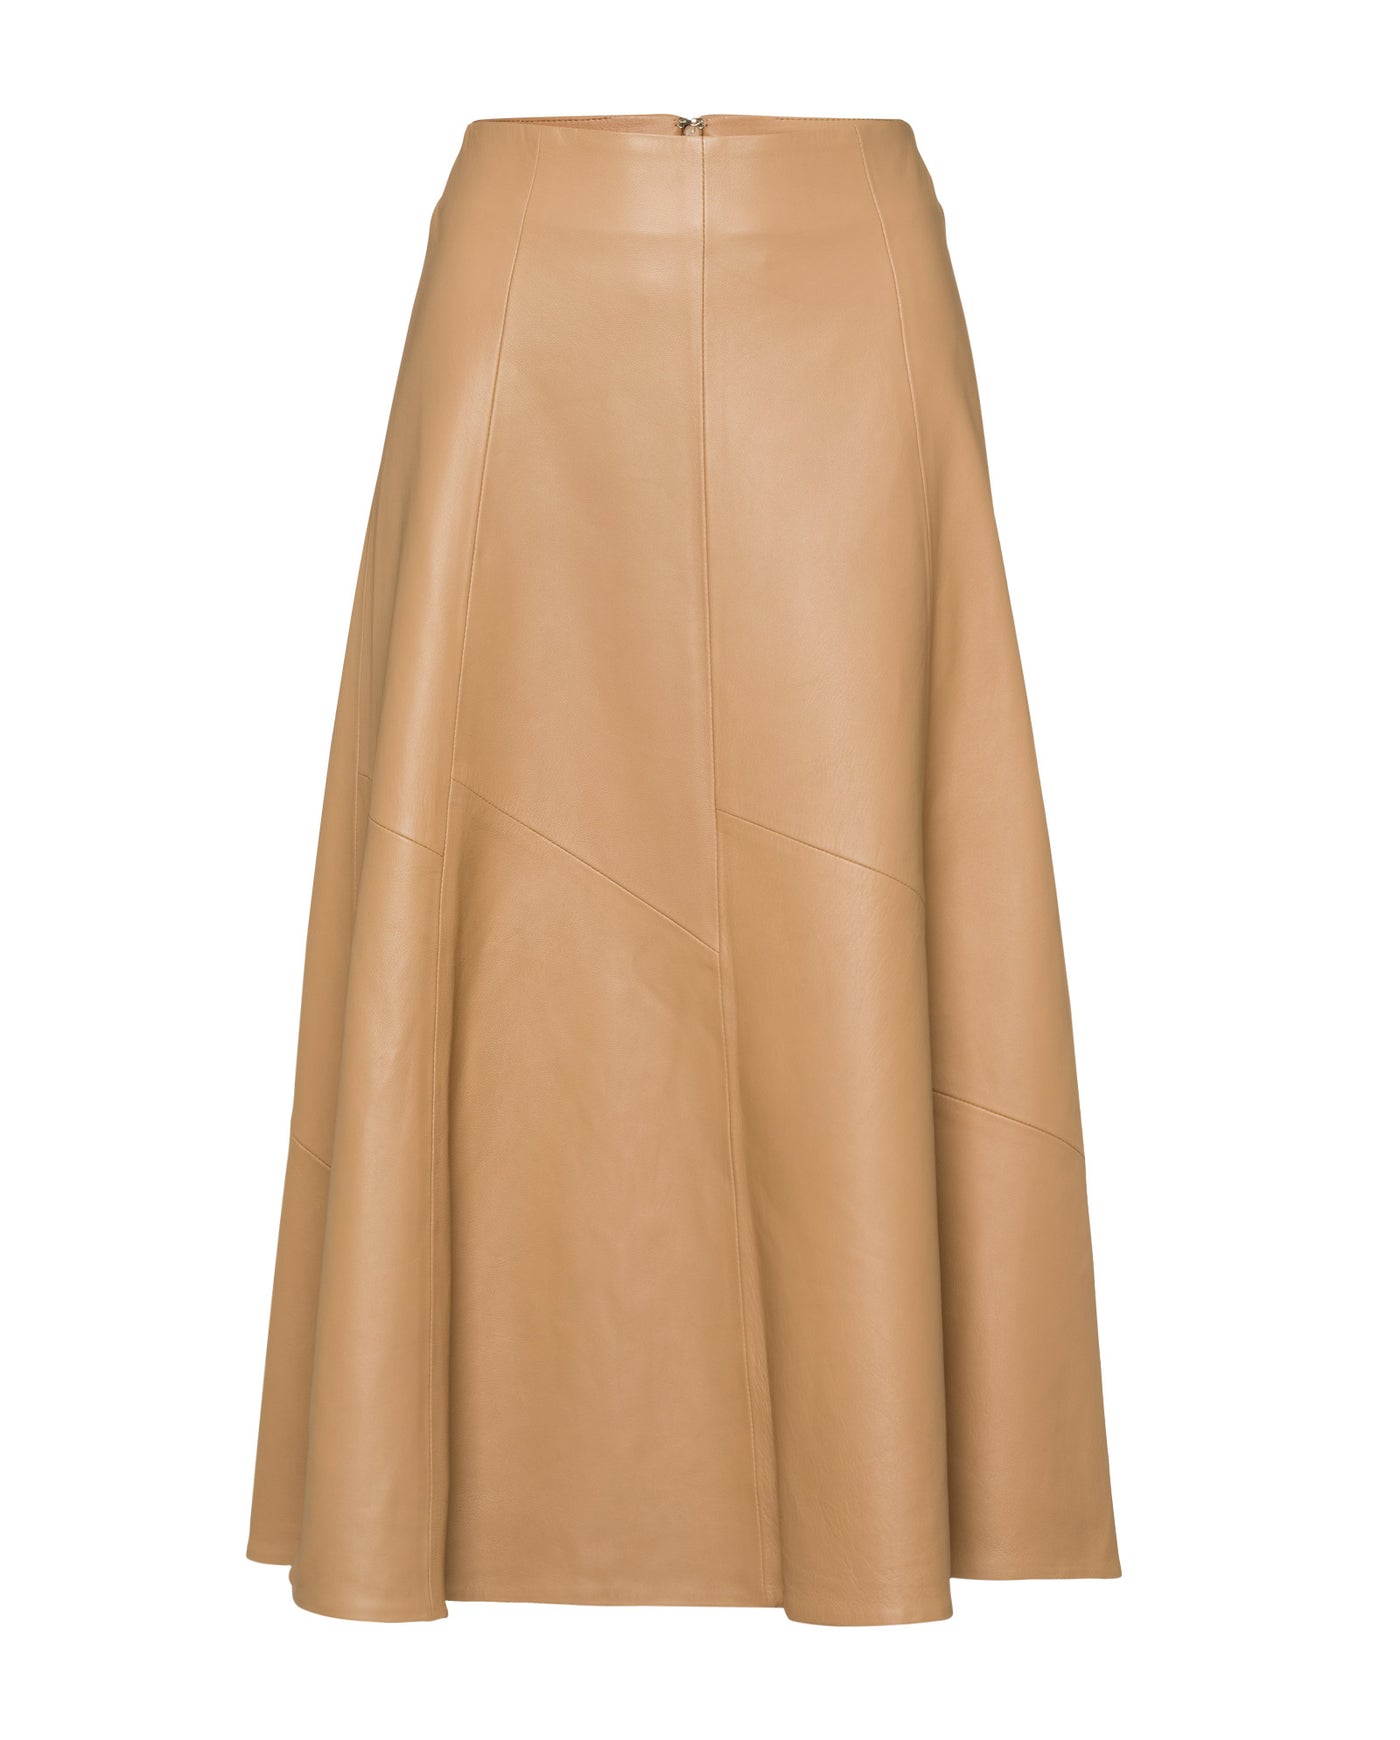 Leather Skirt Midi